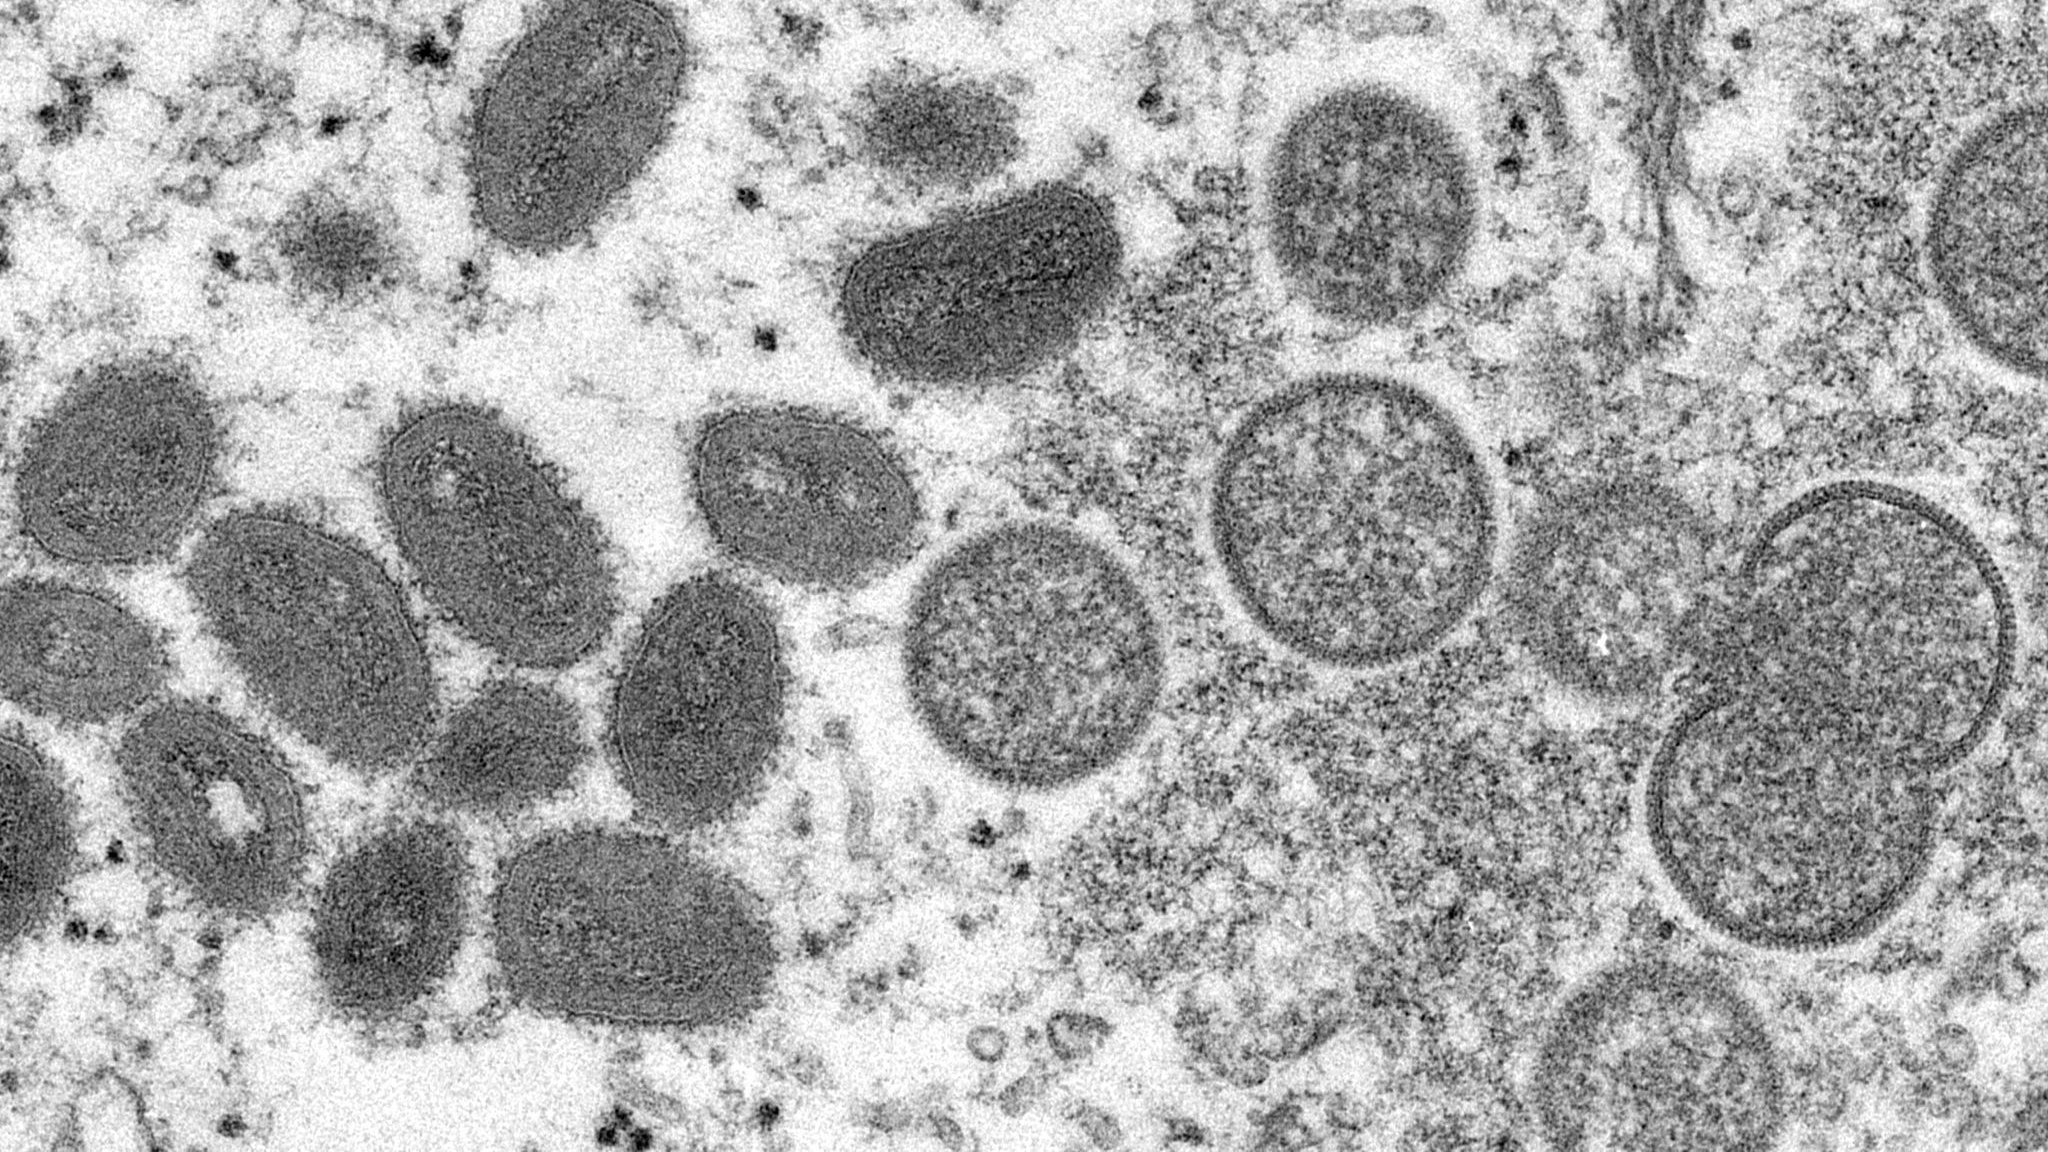 Der Affenpocken-Ausbruch gilt nun als "Notlage von internationaler Tragweite". Foto: dpa/Goldsmith